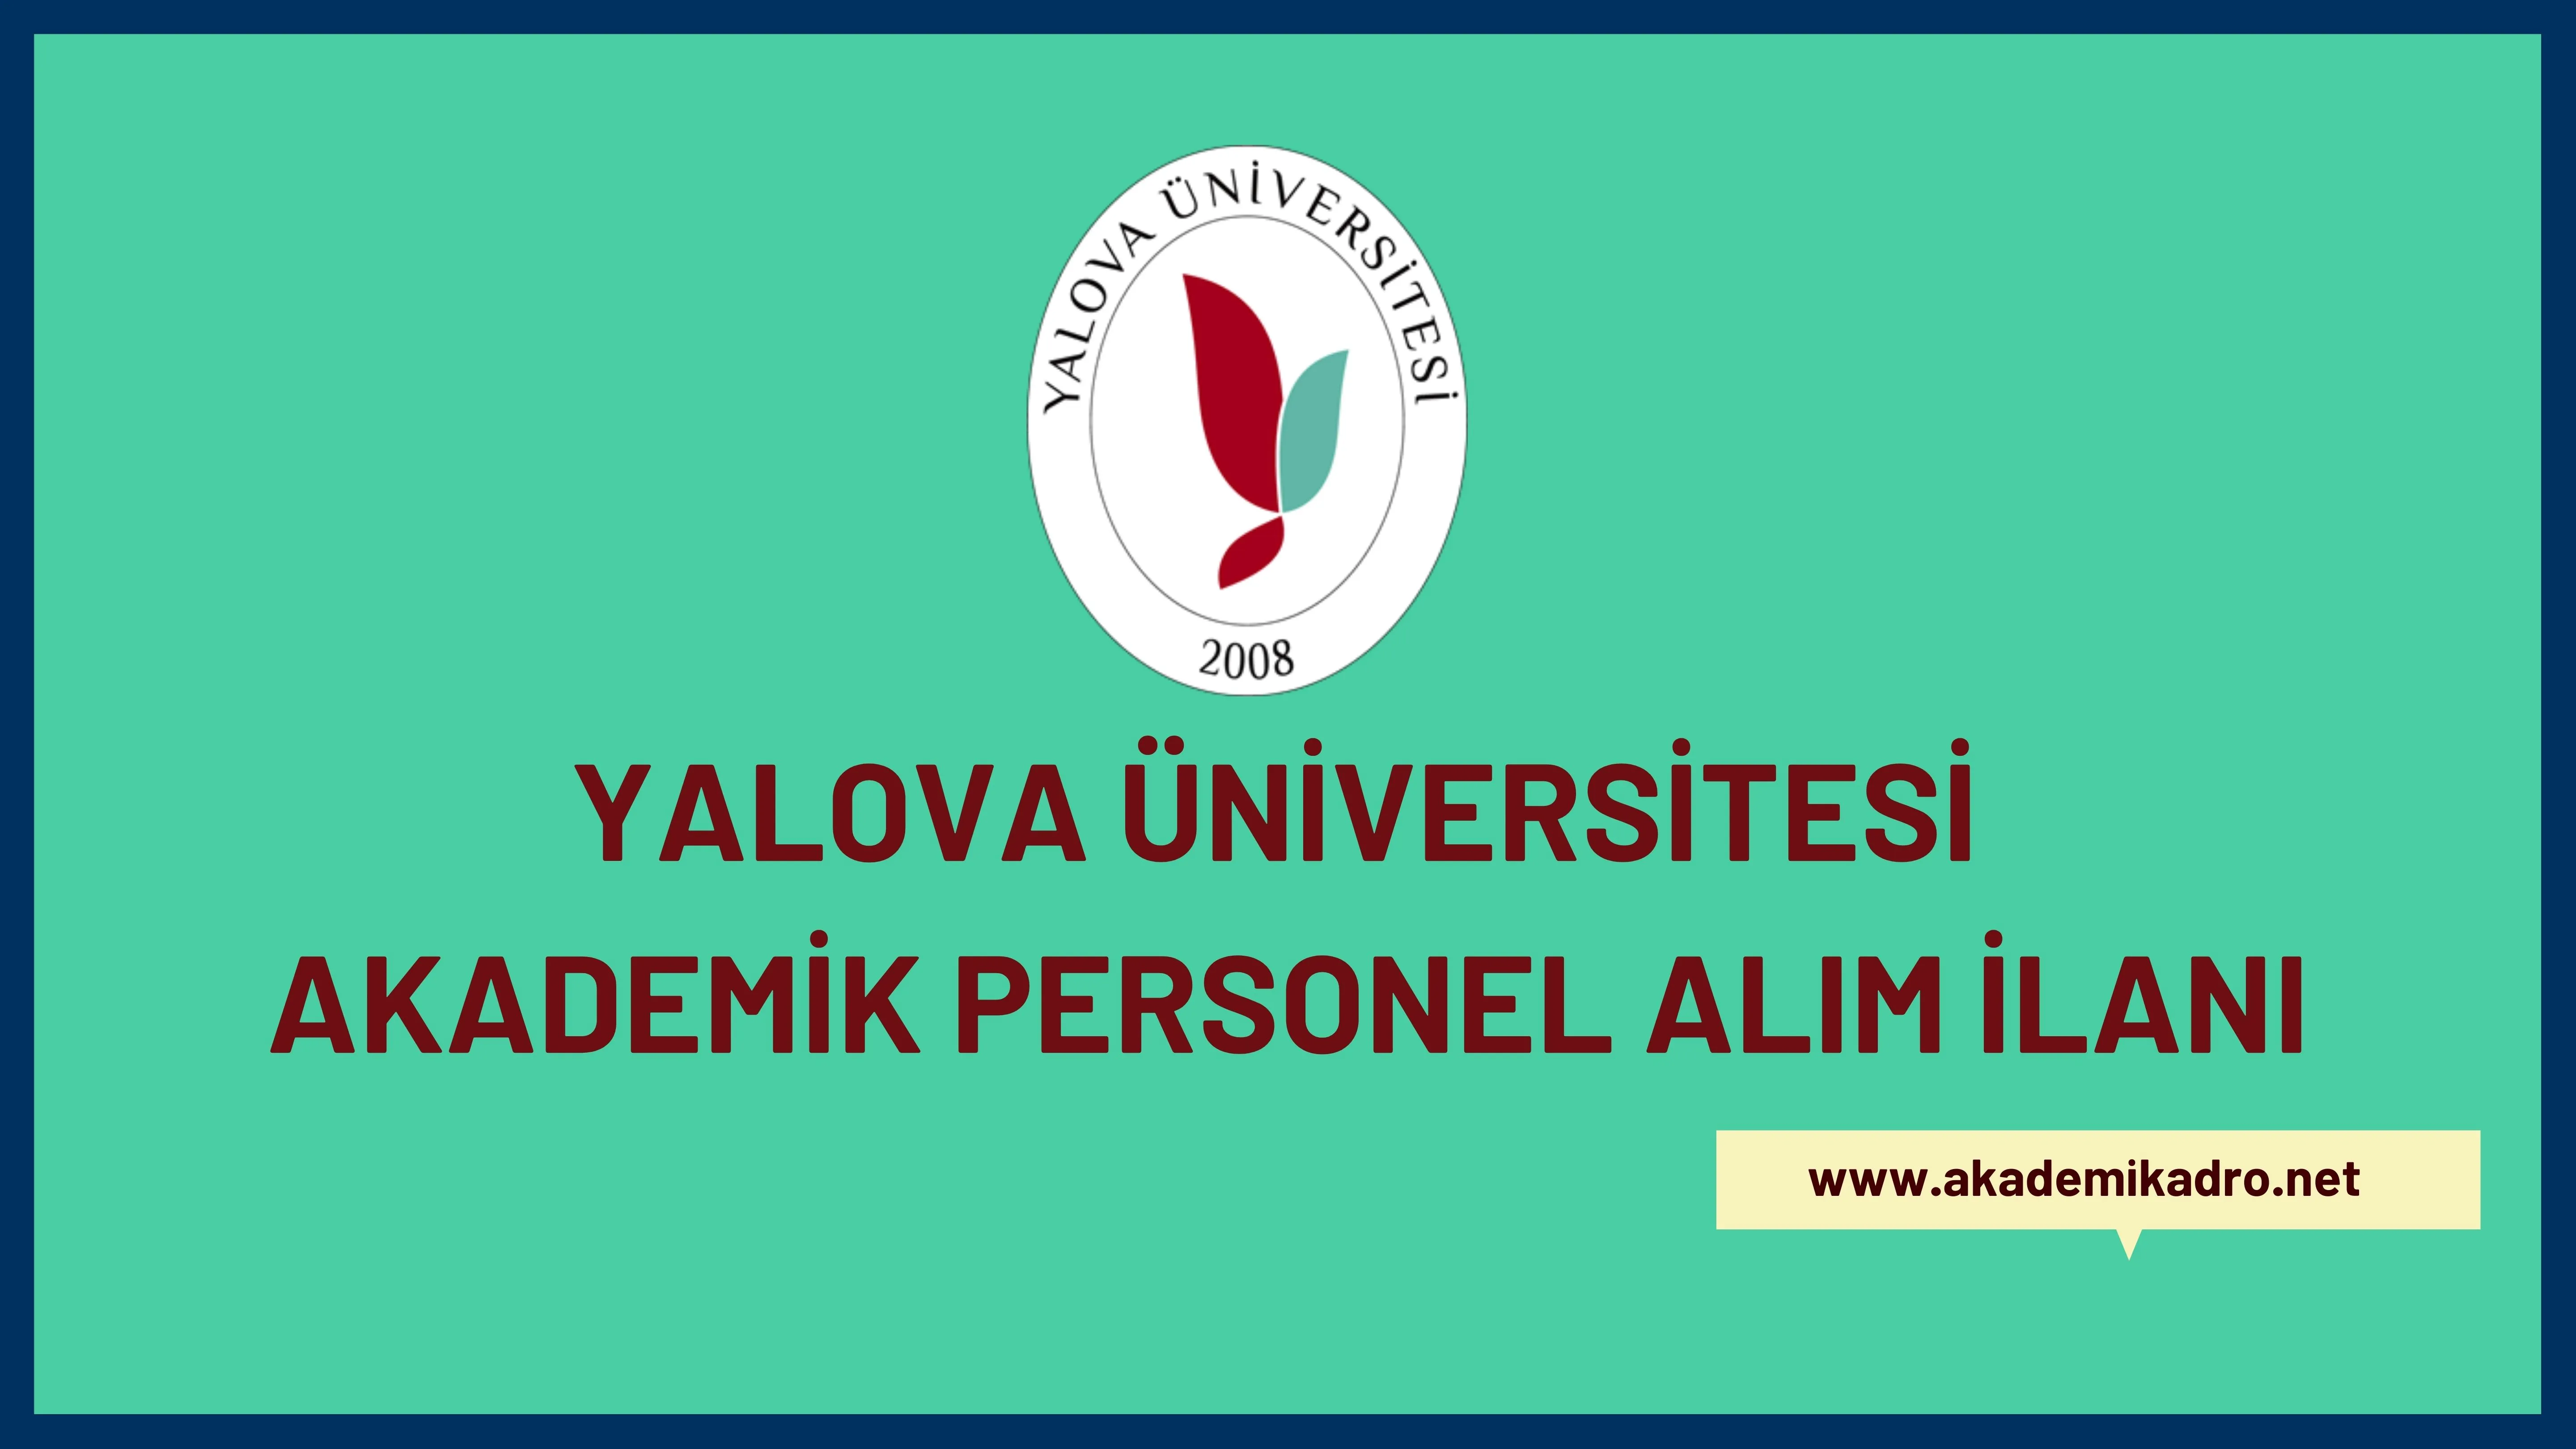 Yalova Üniversitesi birçok alandan 31 akademik personel alacak.